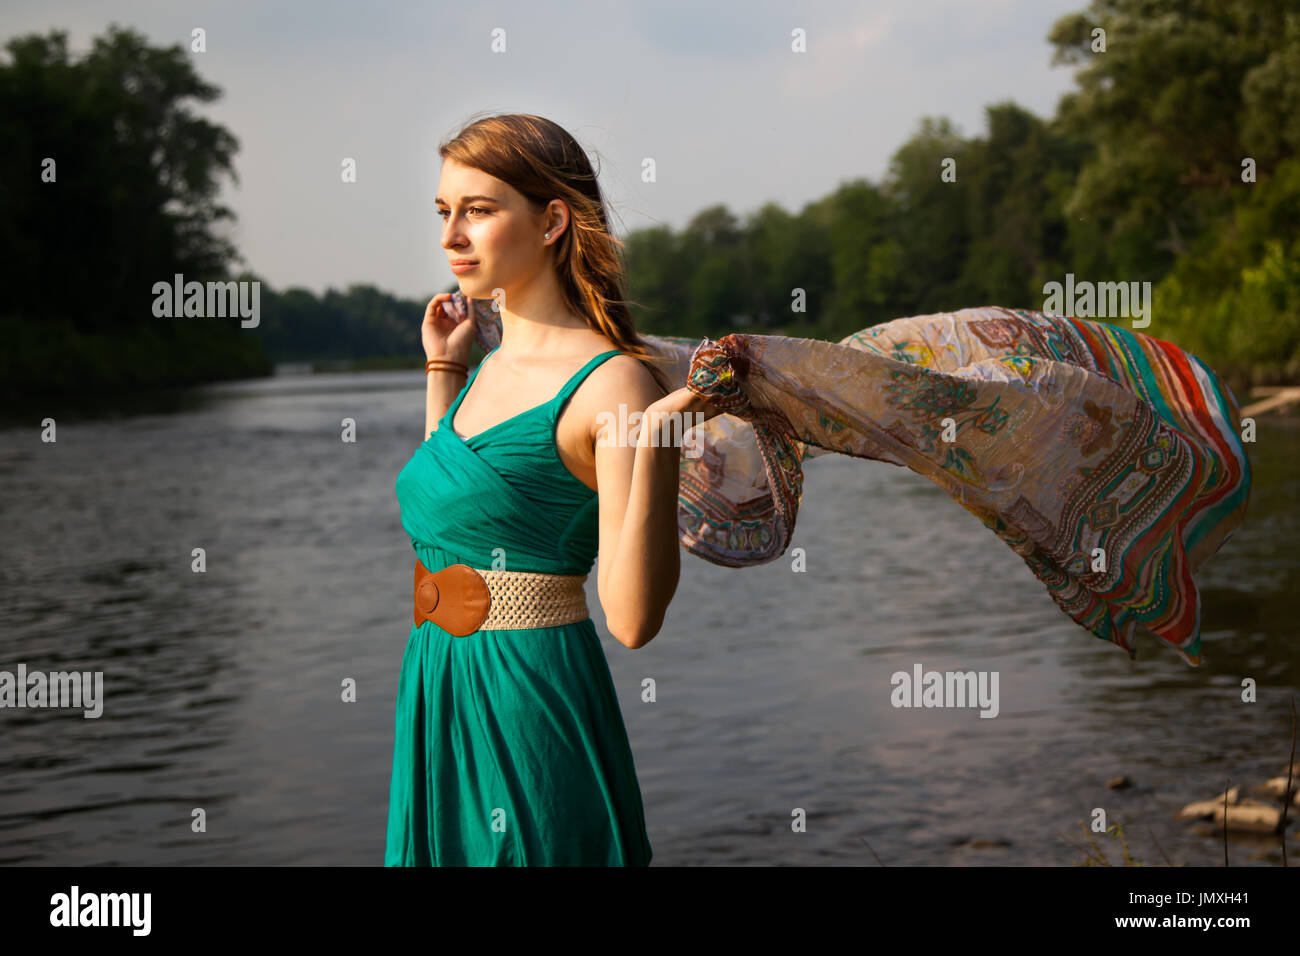 Junge Frau mit einem blaugrün Kleid steht an einem Fluss / See holding im Wind flatternden Teal trendigen Schal.   Sie ist entspannt und ruhig während Gefühl t Stockfoto